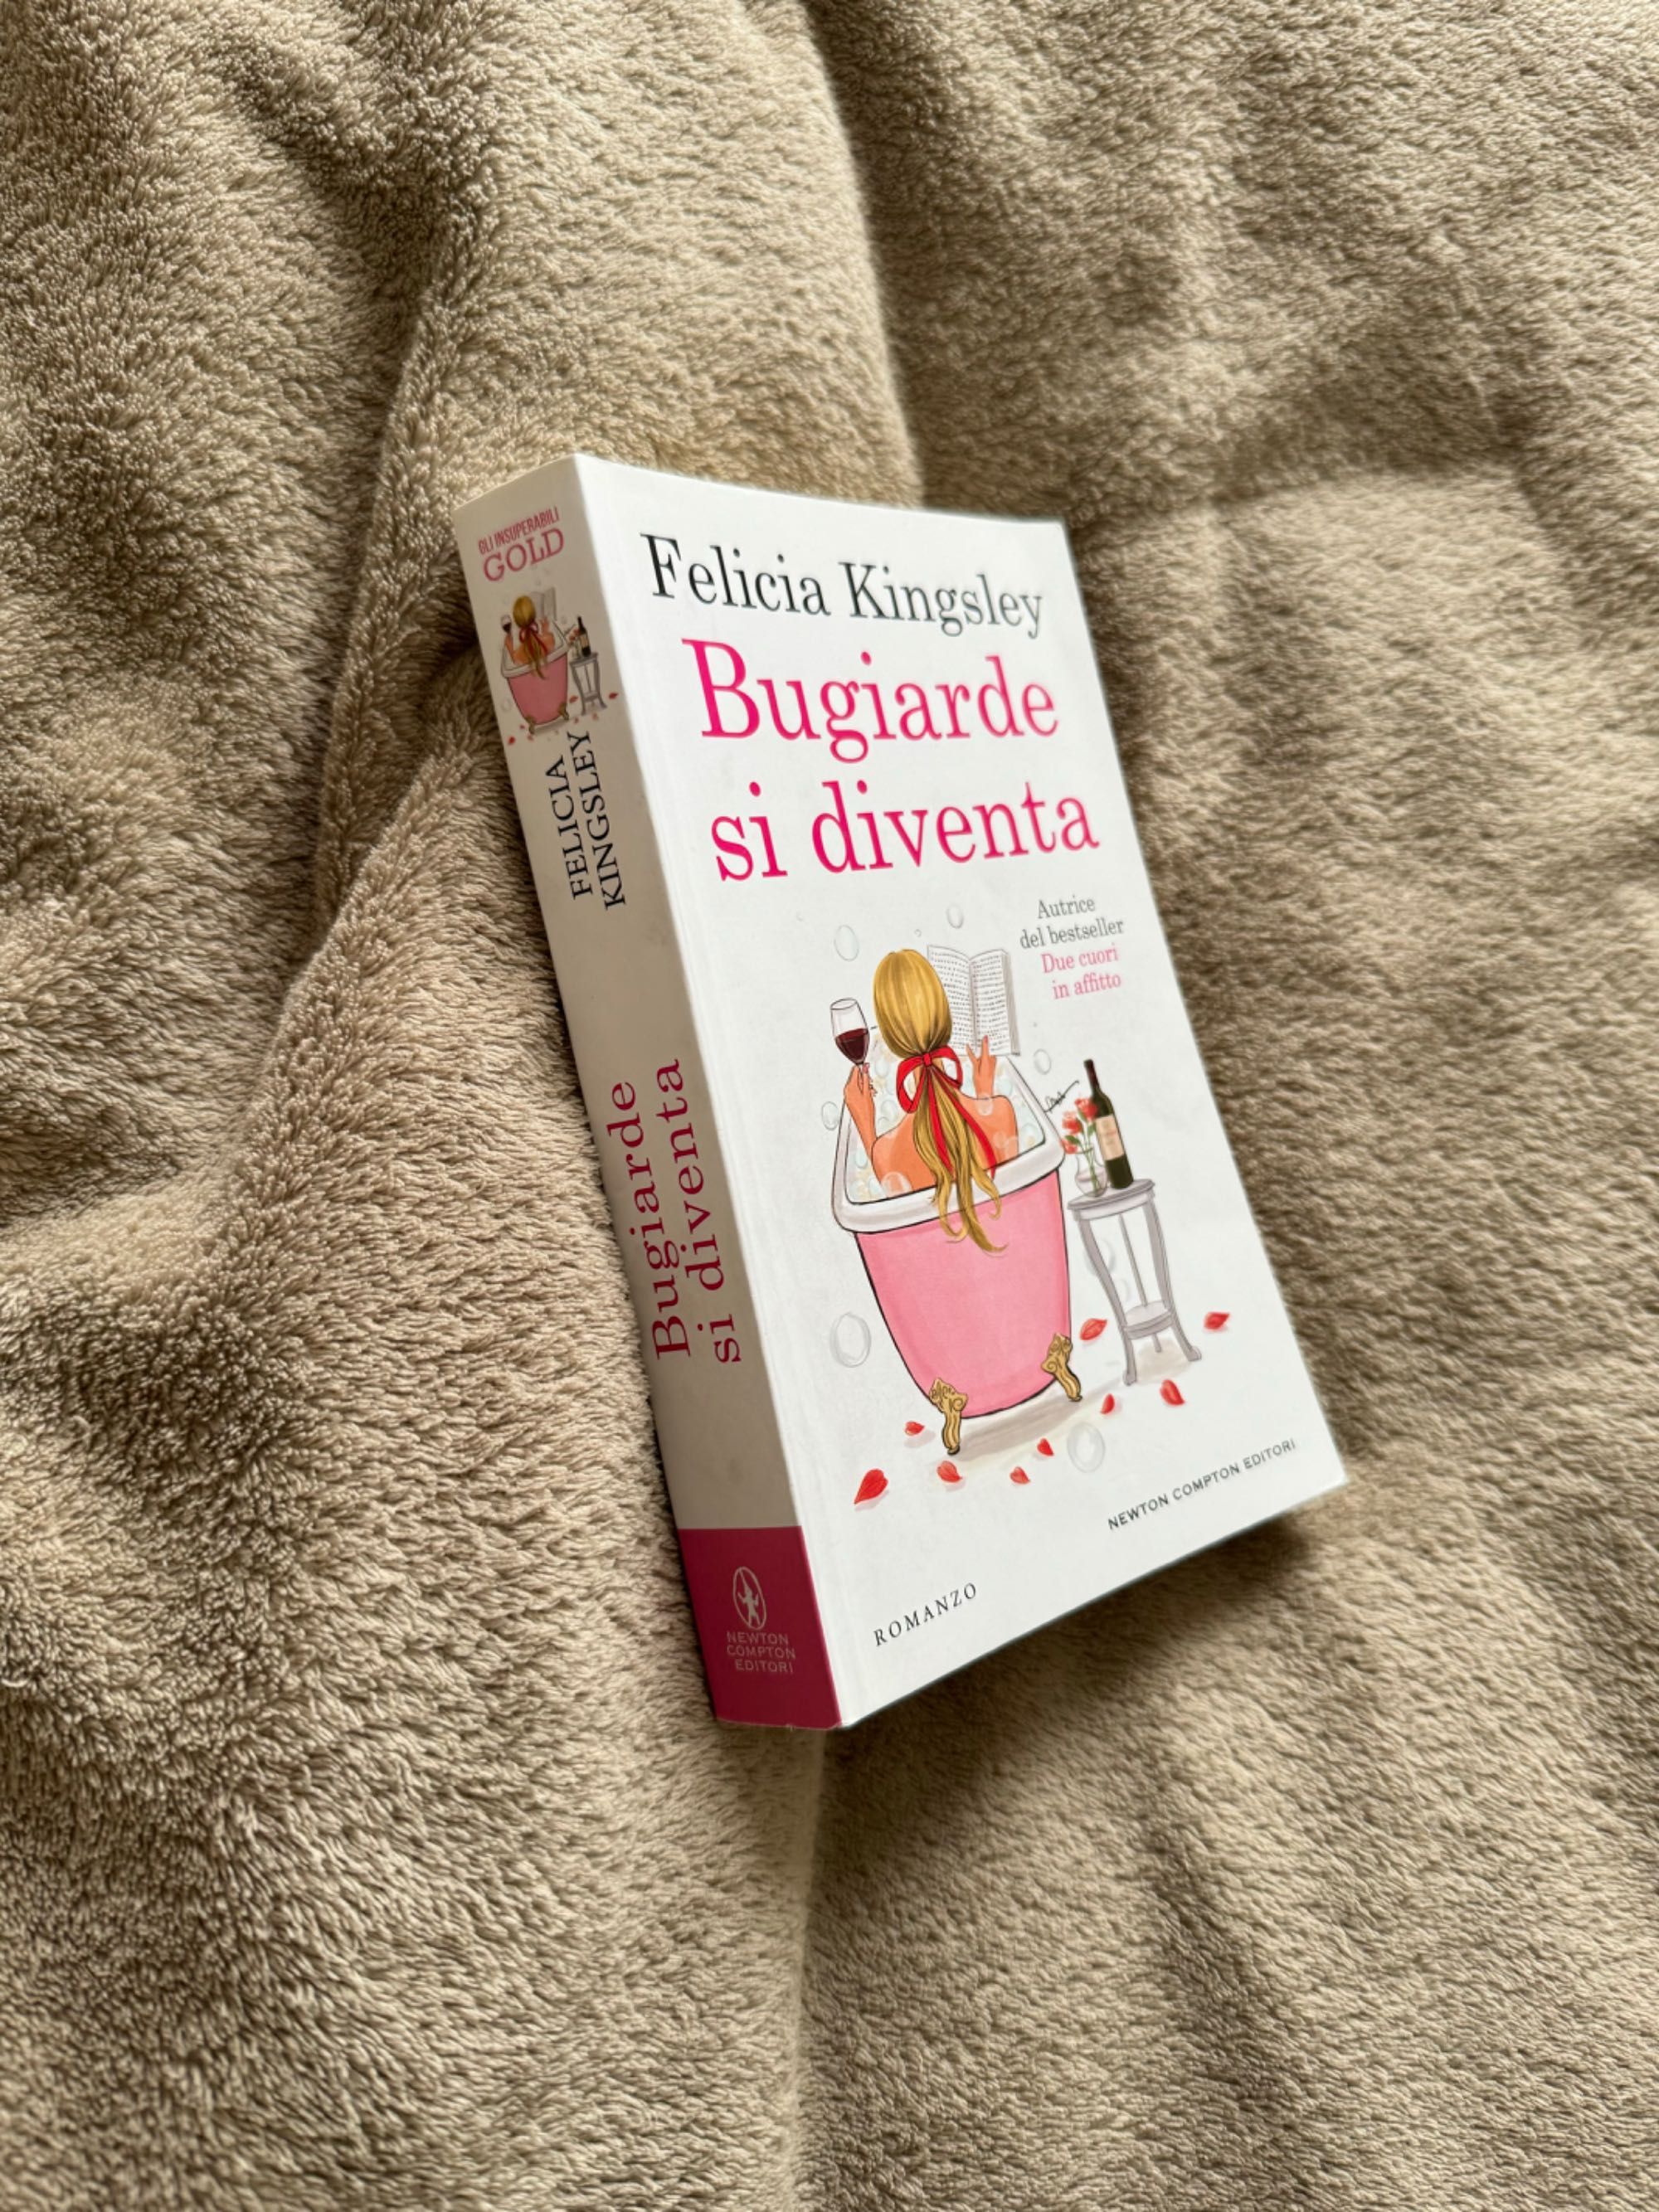 Felicia Kingsley bugiarde si diventa książka w języku włoskim